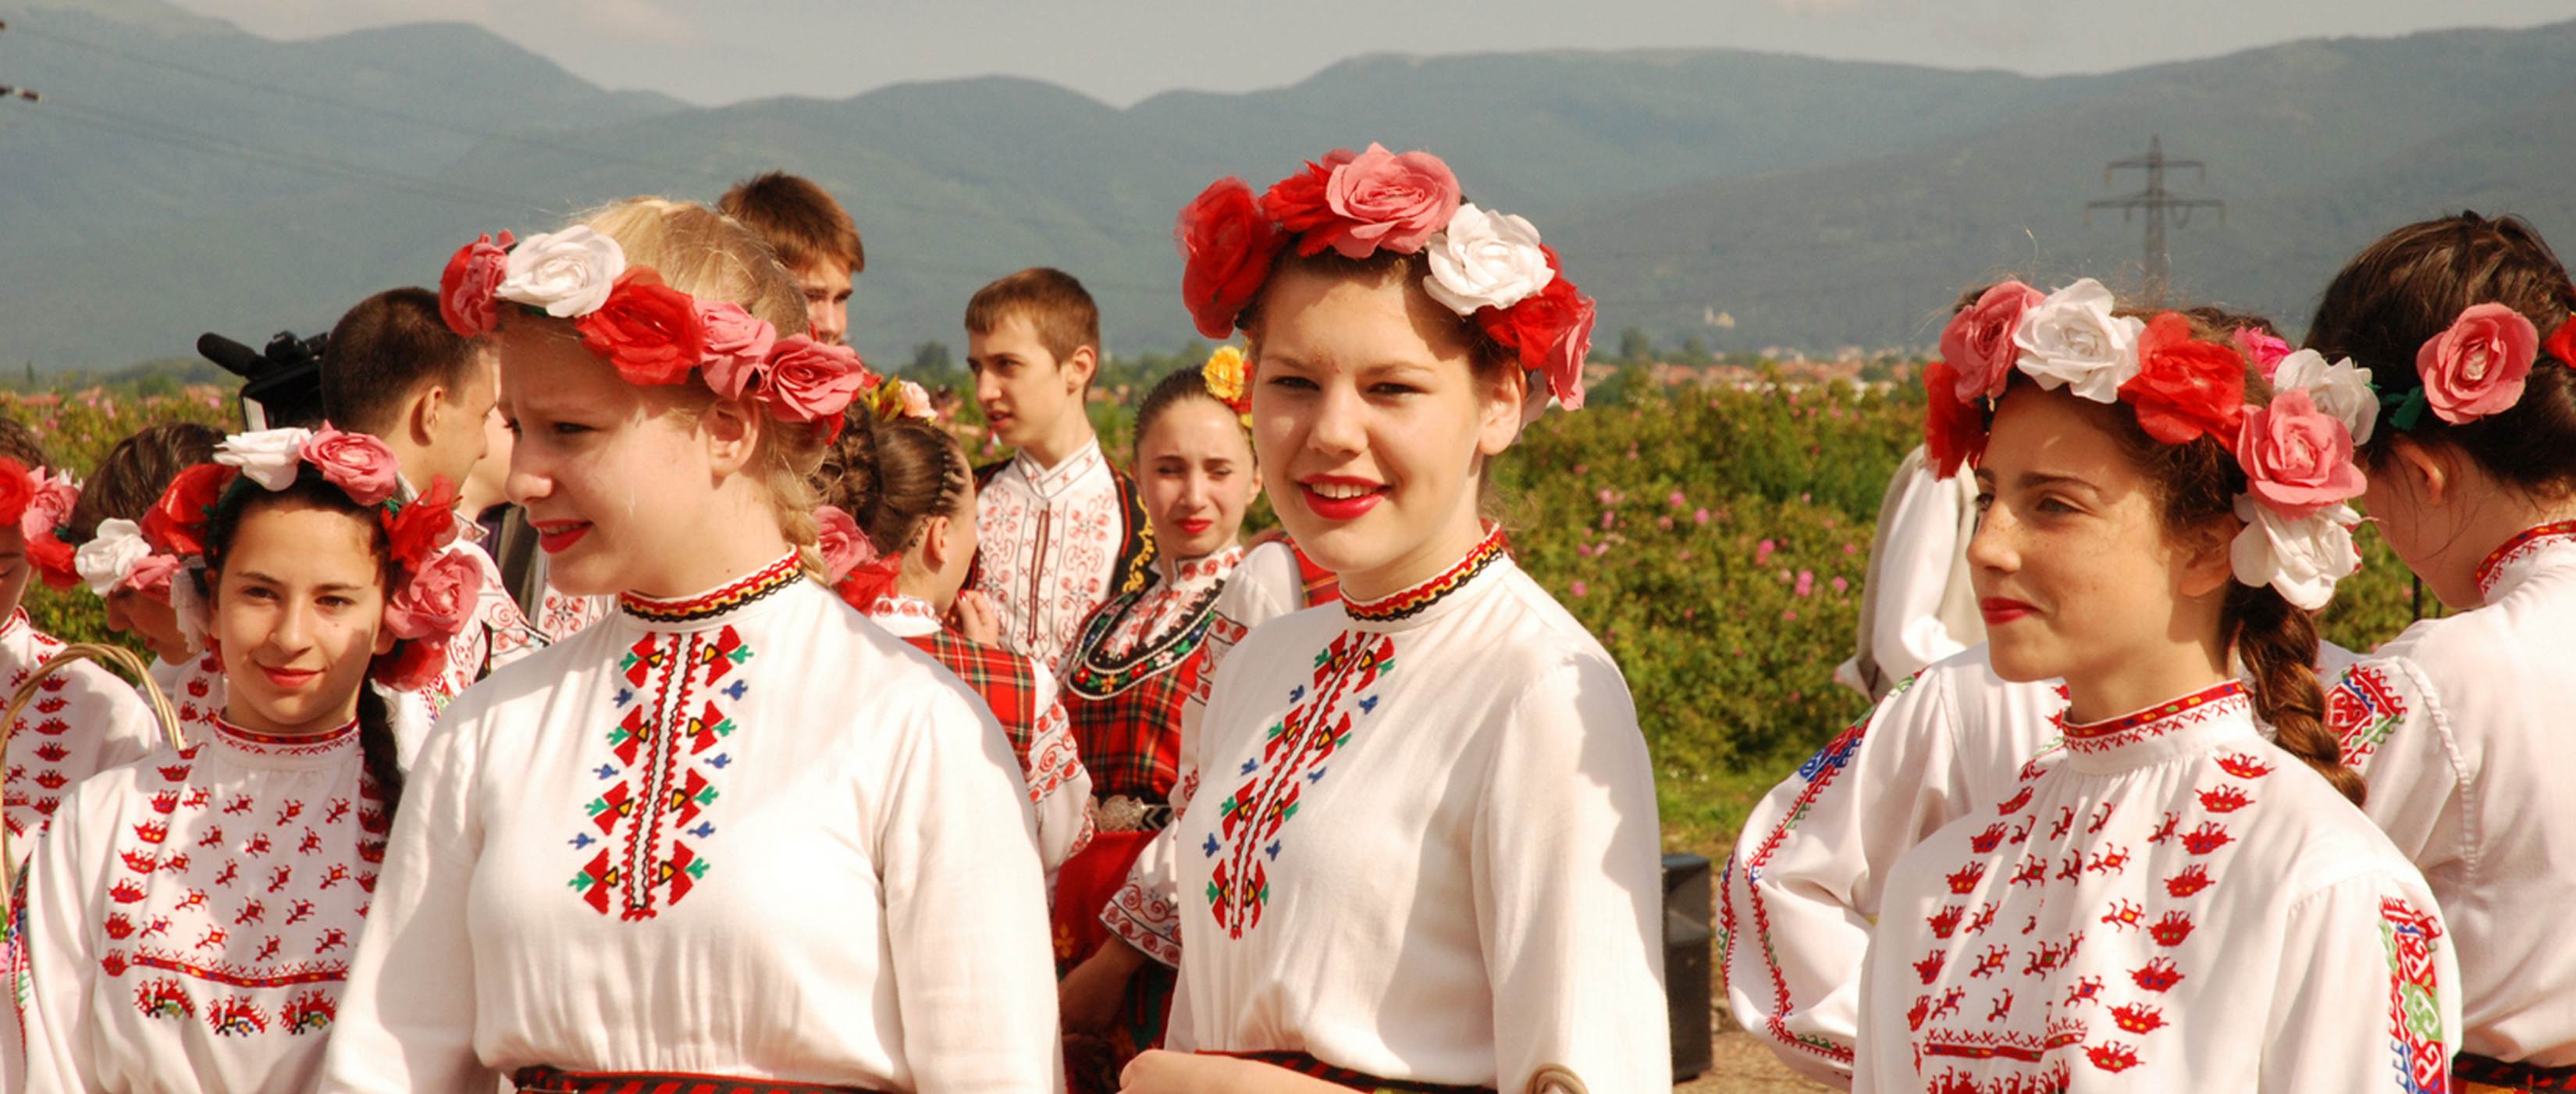 Beim Rosenfest in Bulgarien . Bildrechte Matthias Ptzold - Lupe Reisen